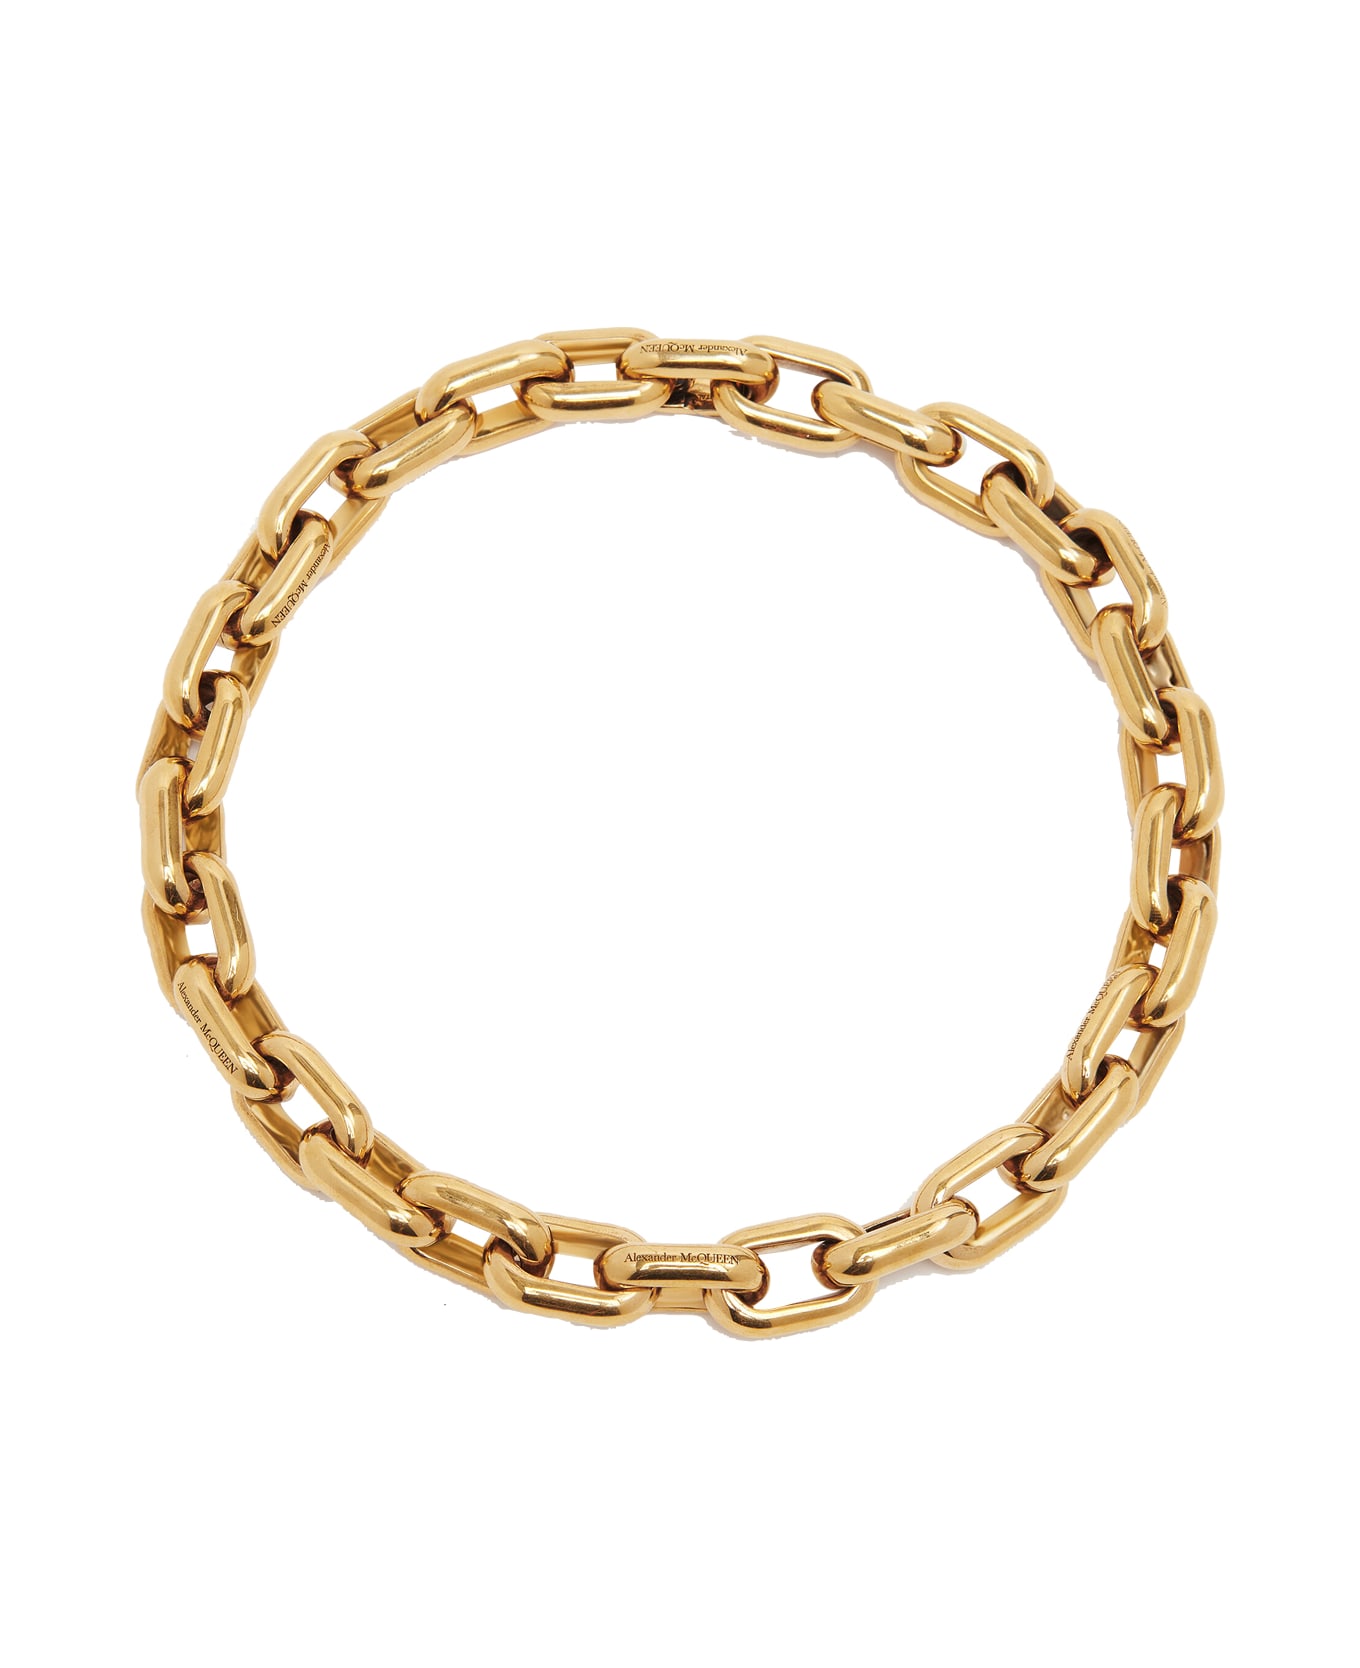 Alexander McQueen Peak Chain Necklace - Golden ネックレス